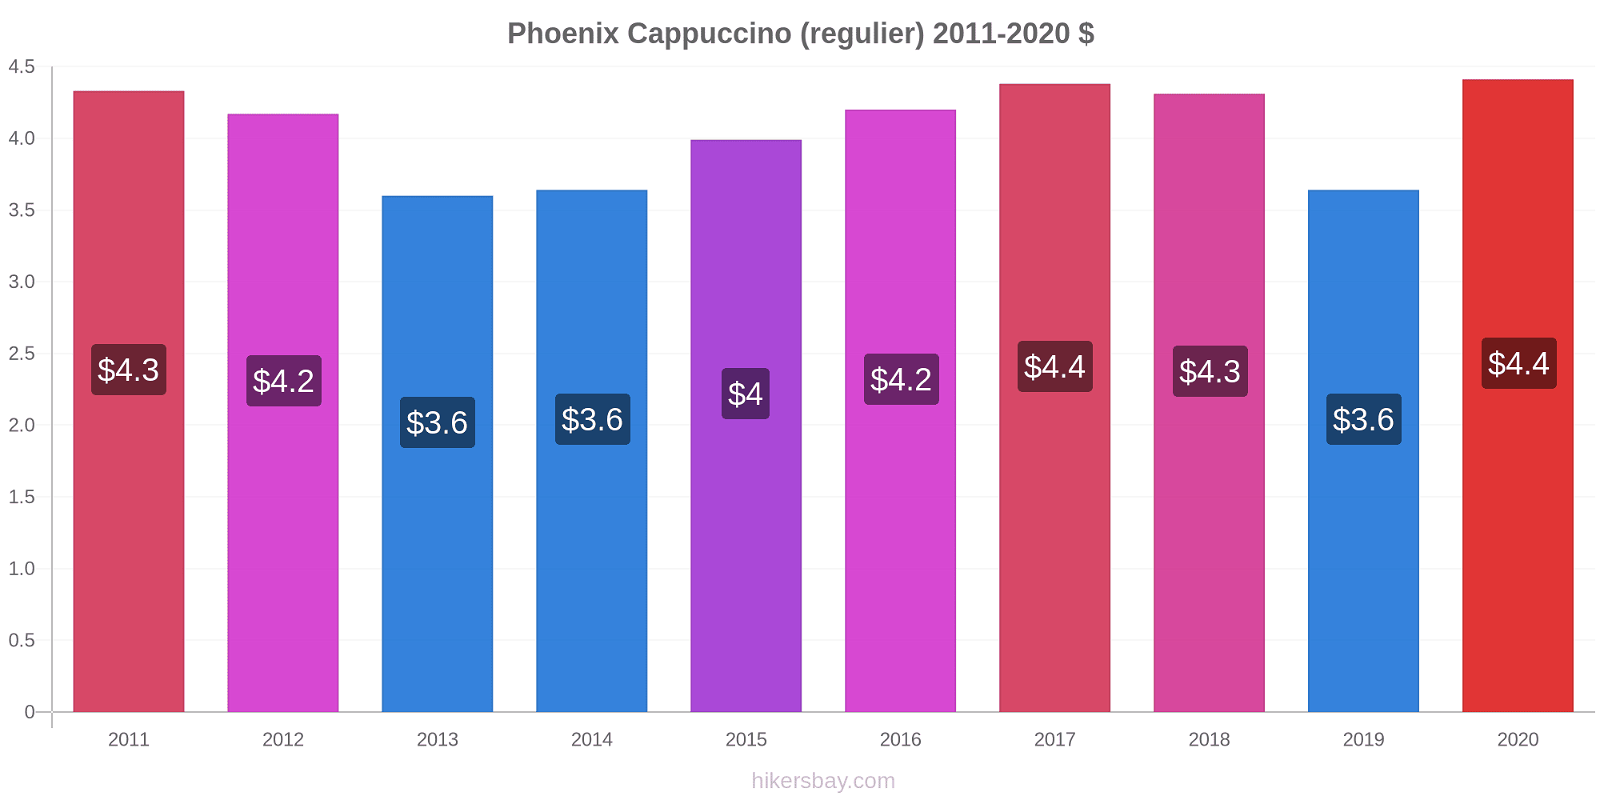 Phoenix prijswijzigingen Cappuccino (regelmatige) hikersbay.com